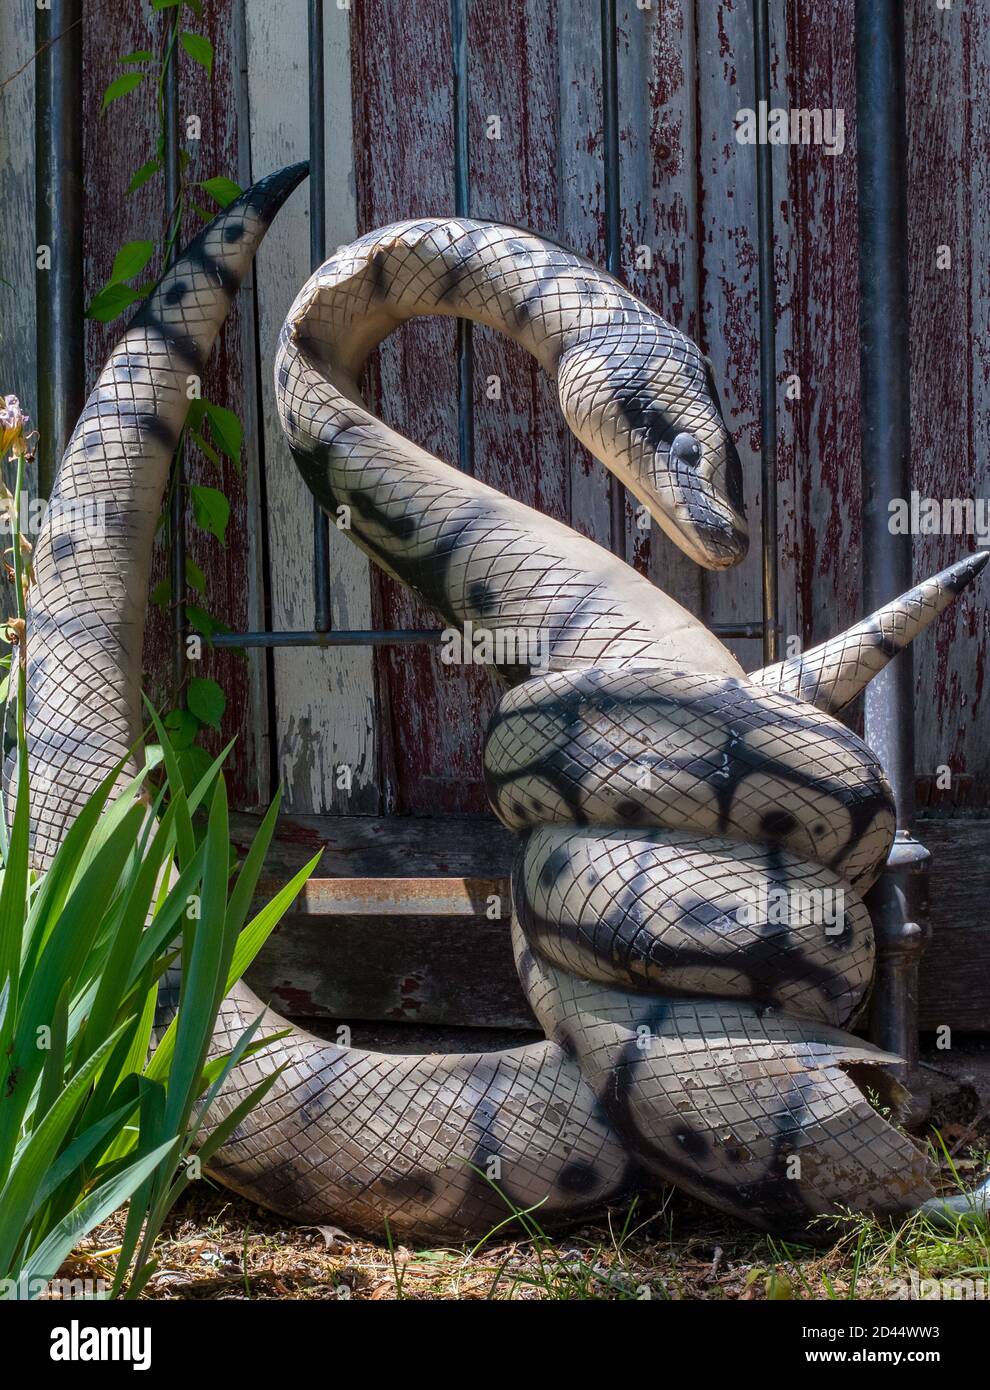 Une grande statue de serpent en plastique est enroulée et prête à frappez toute victime trop proche Banque D'Images